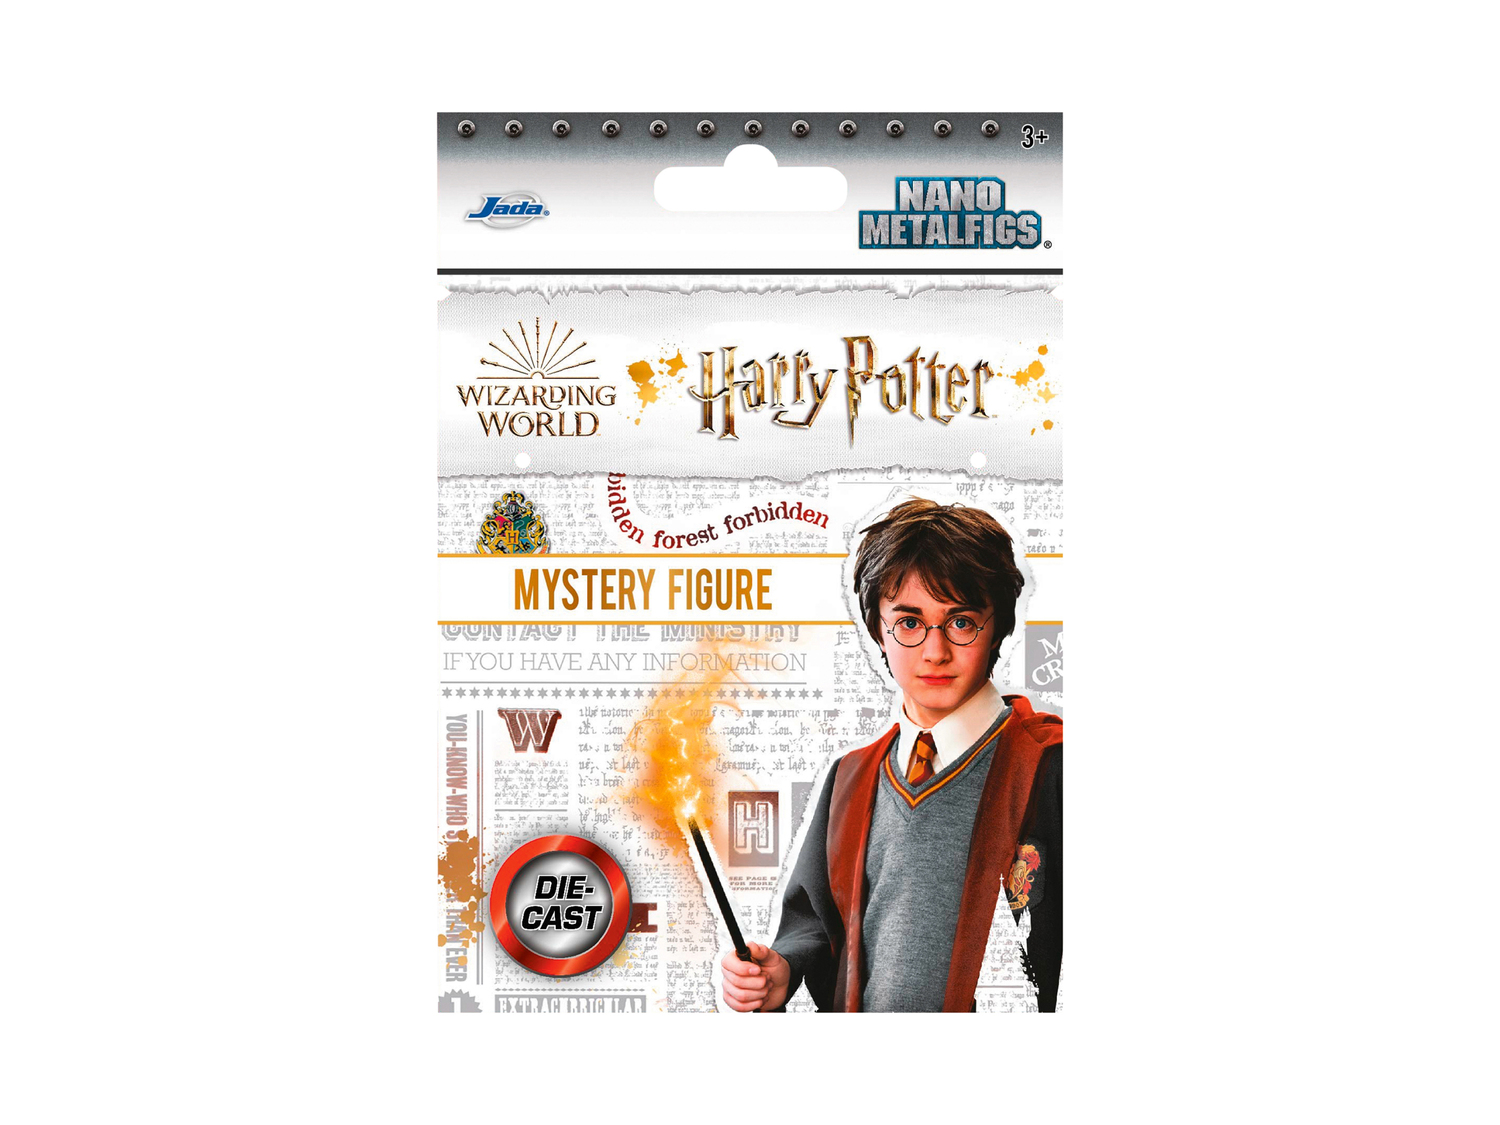 Personaggi da collezione Harry Potter , prezzo 2.49 €  
-  Mistery figure da scoprire!